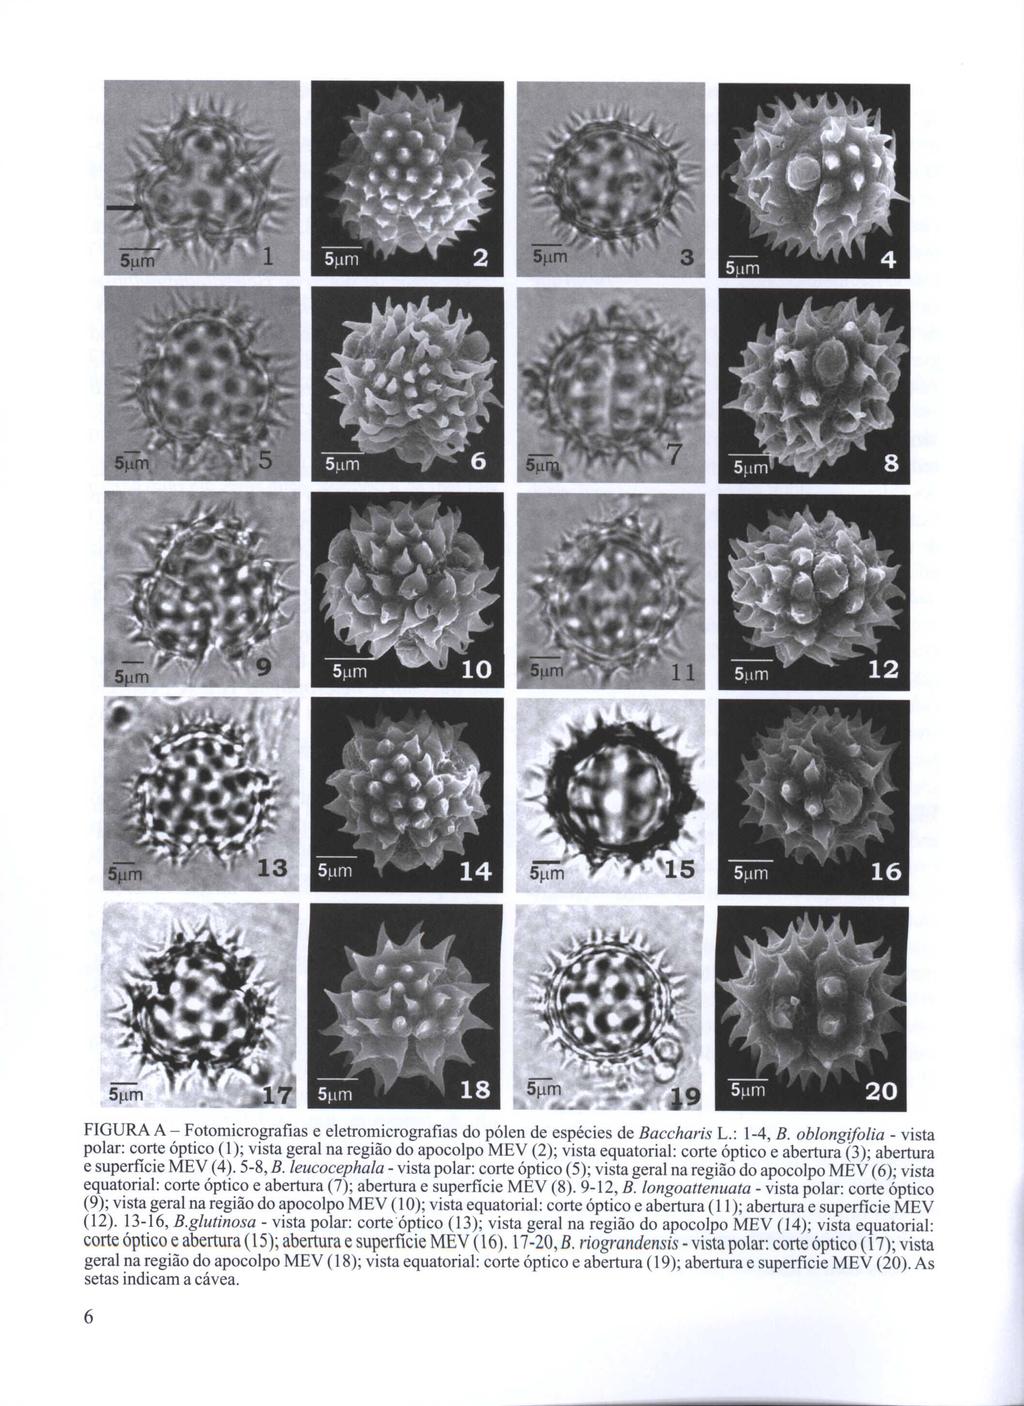 FIGURA A - Fotomicrografias e eletromicrografias do pólen de espécies de Baccharis L.: 1-4, B.